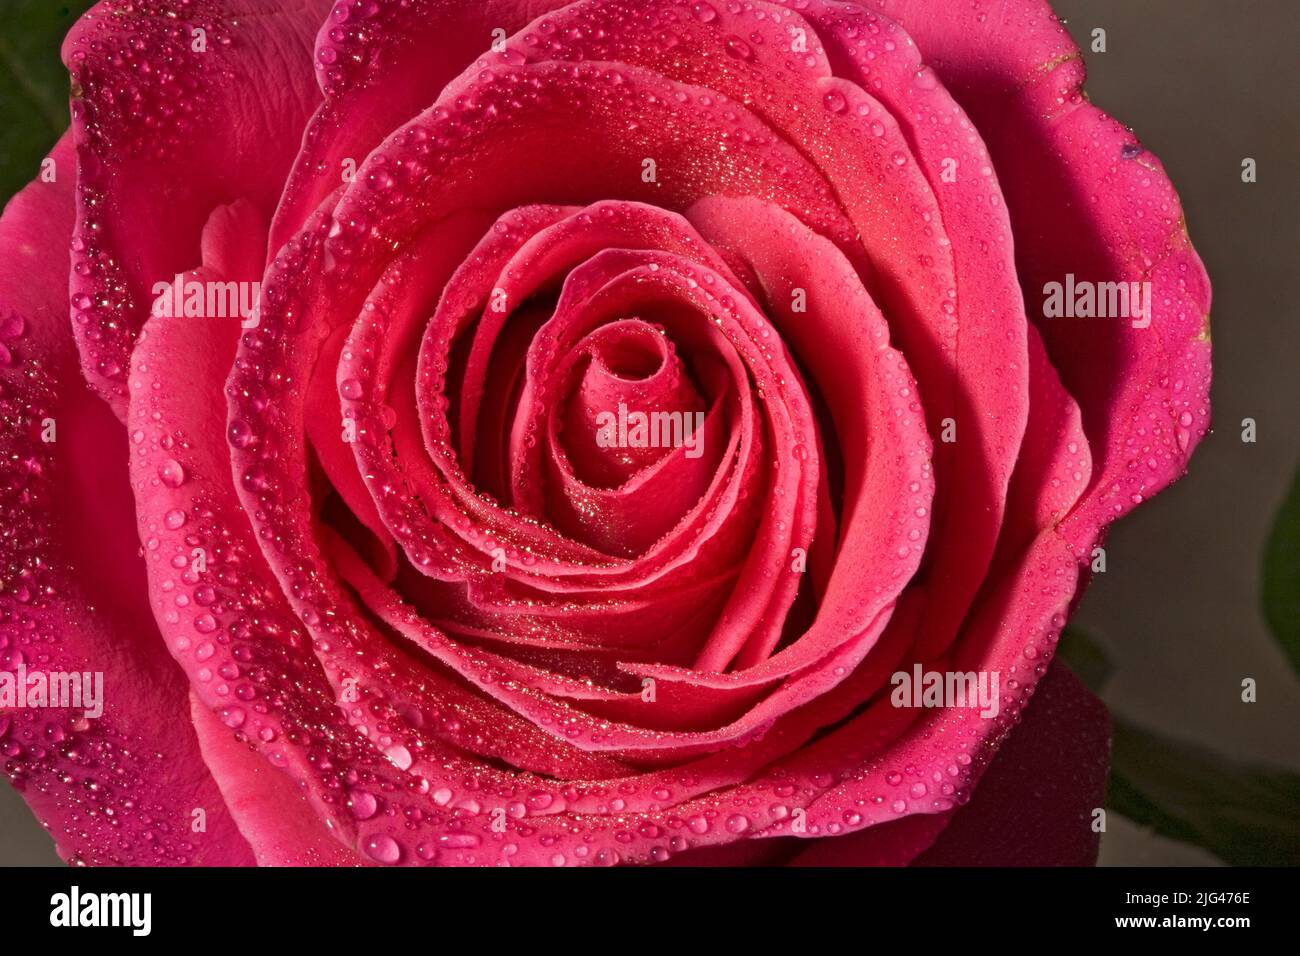 Una vista ravvicinata del centro di una rosa rossa. Foto Stock